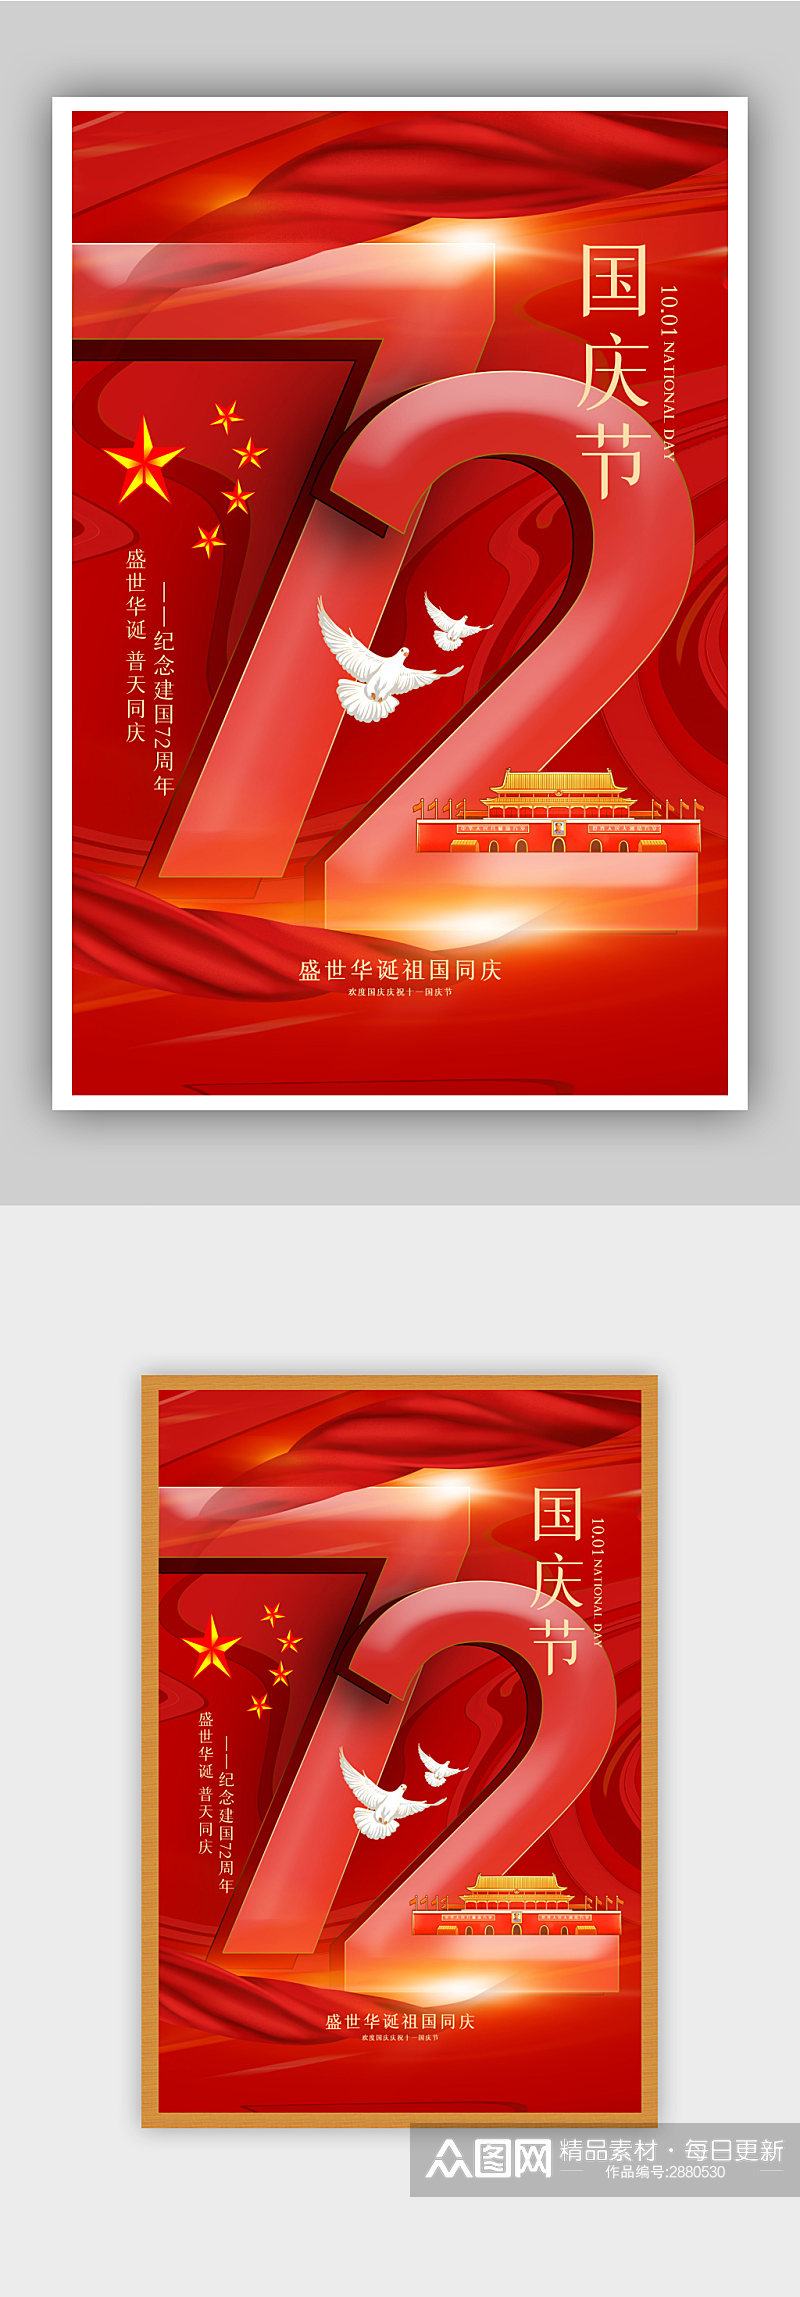 红色大气国庆节72周年海报素材